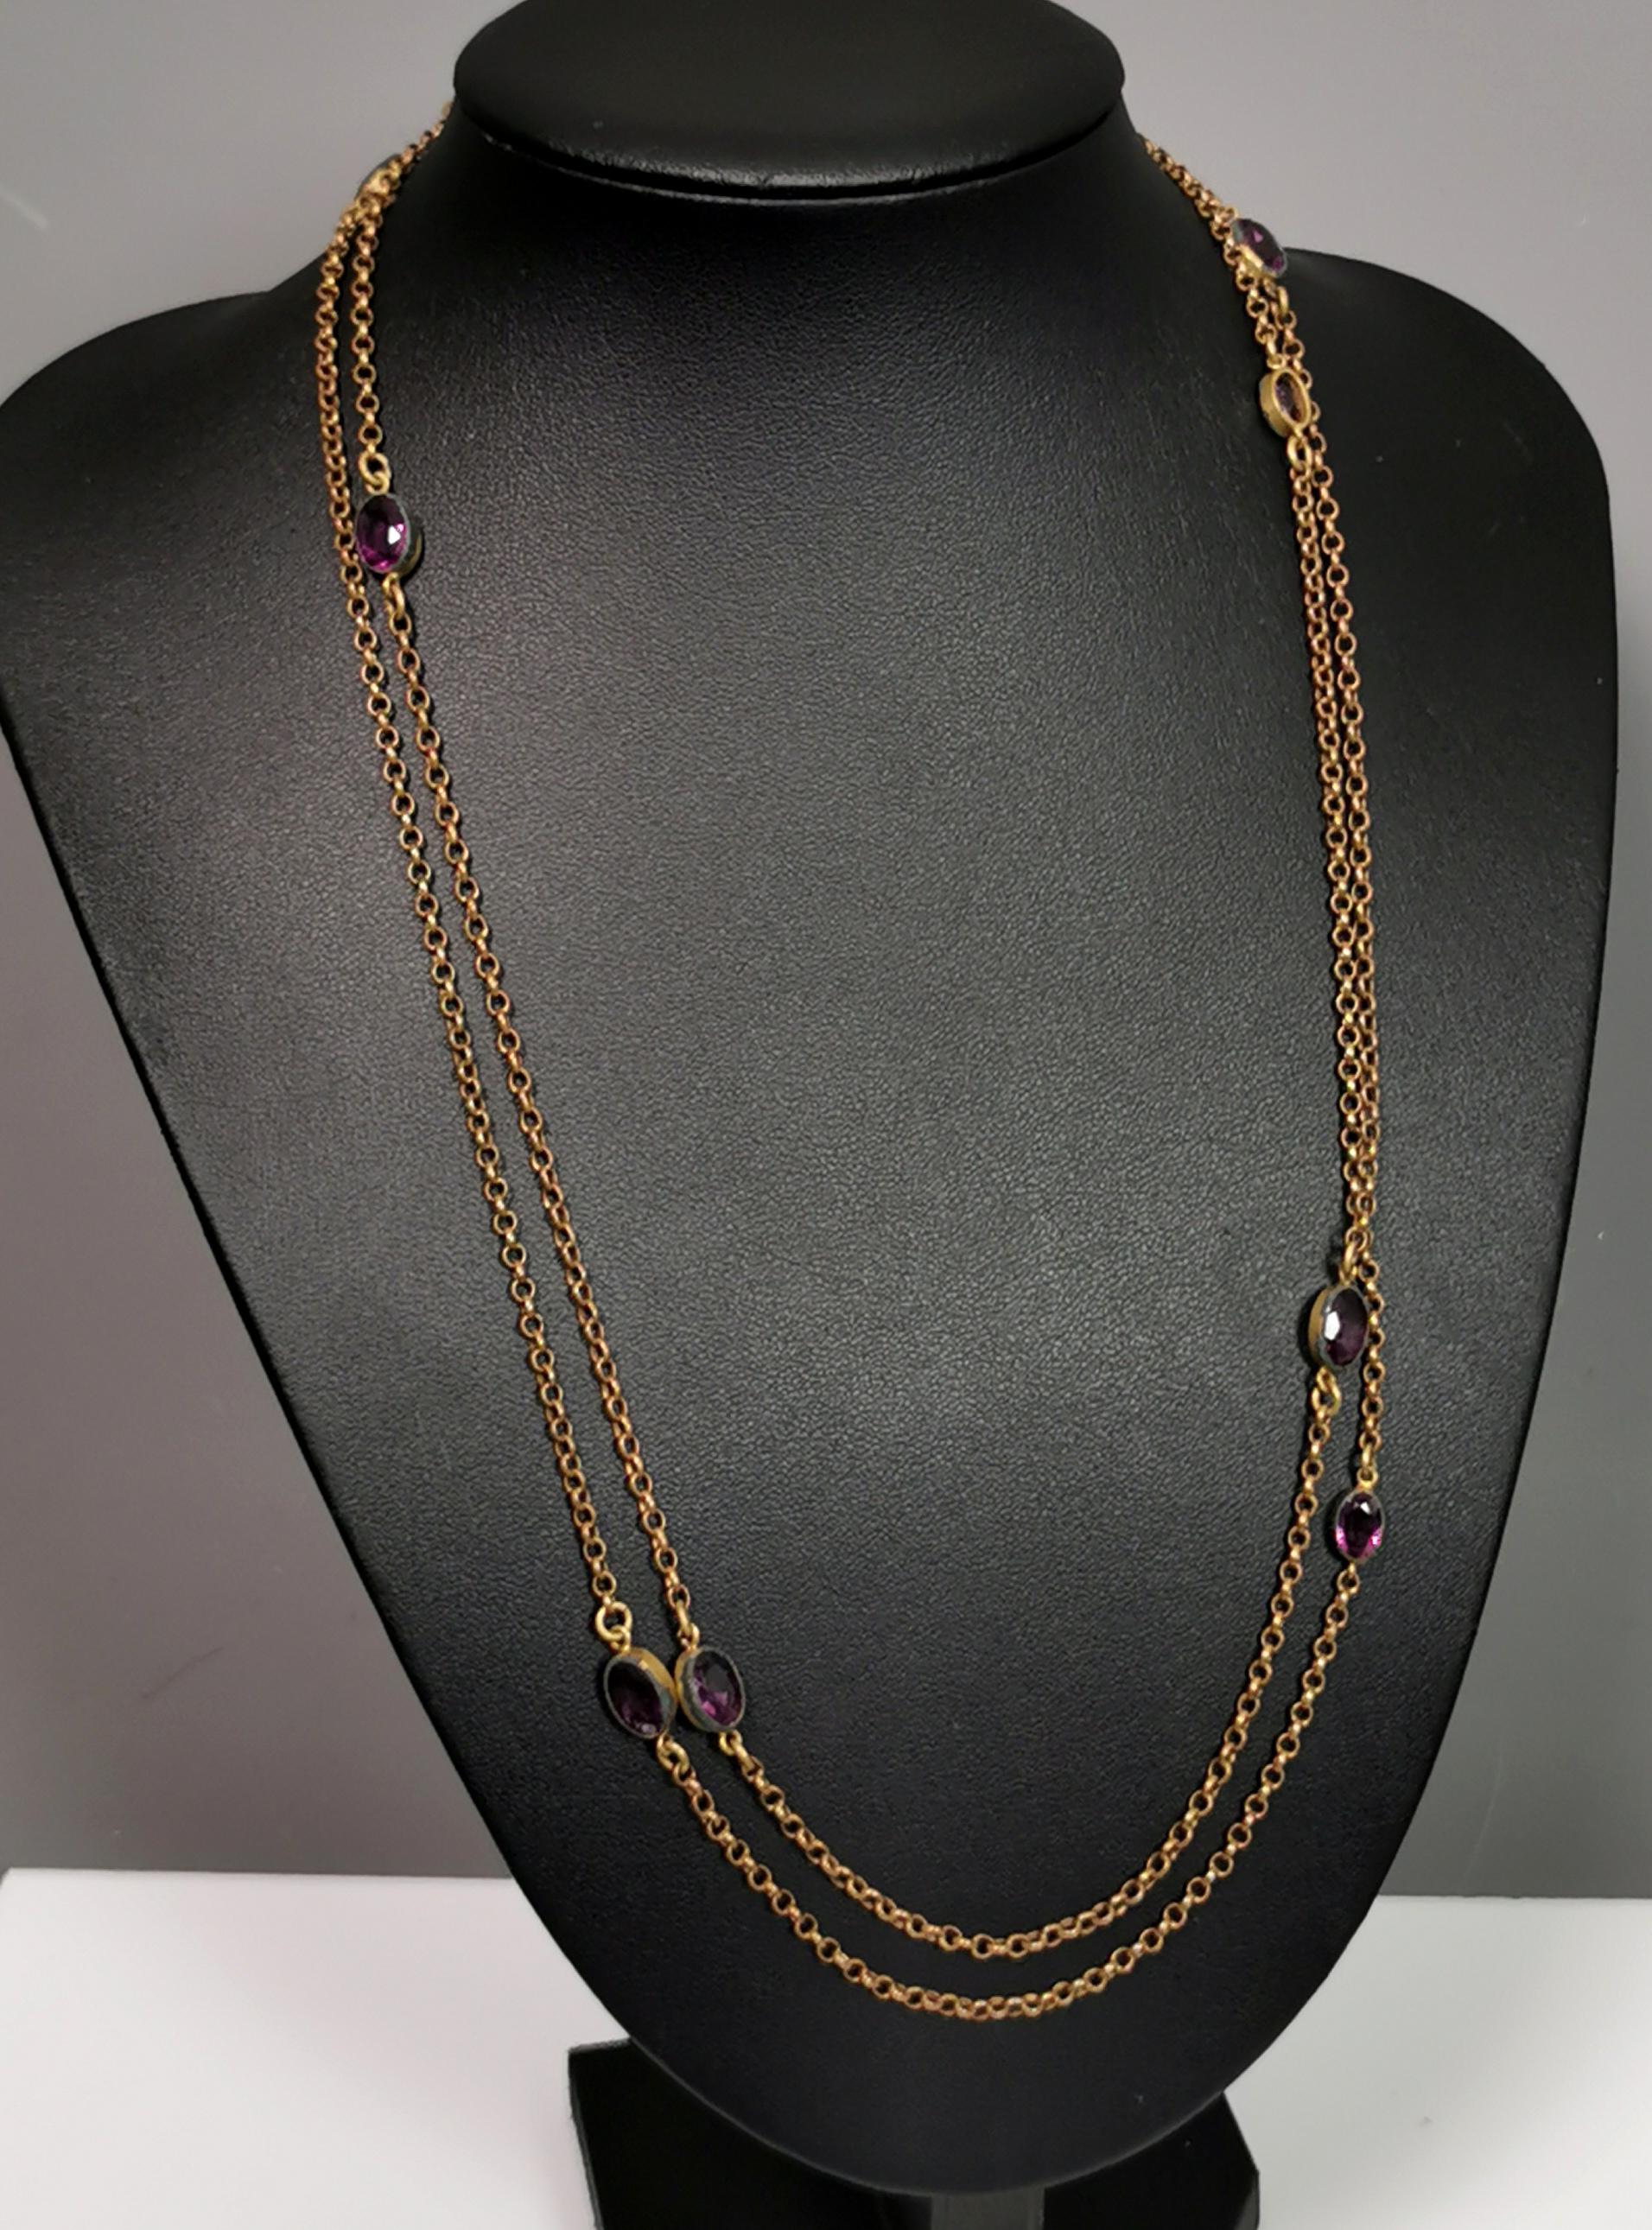 Antique Edwardian purple paste sautoir necklace, gold plated long chain  For Sale 6